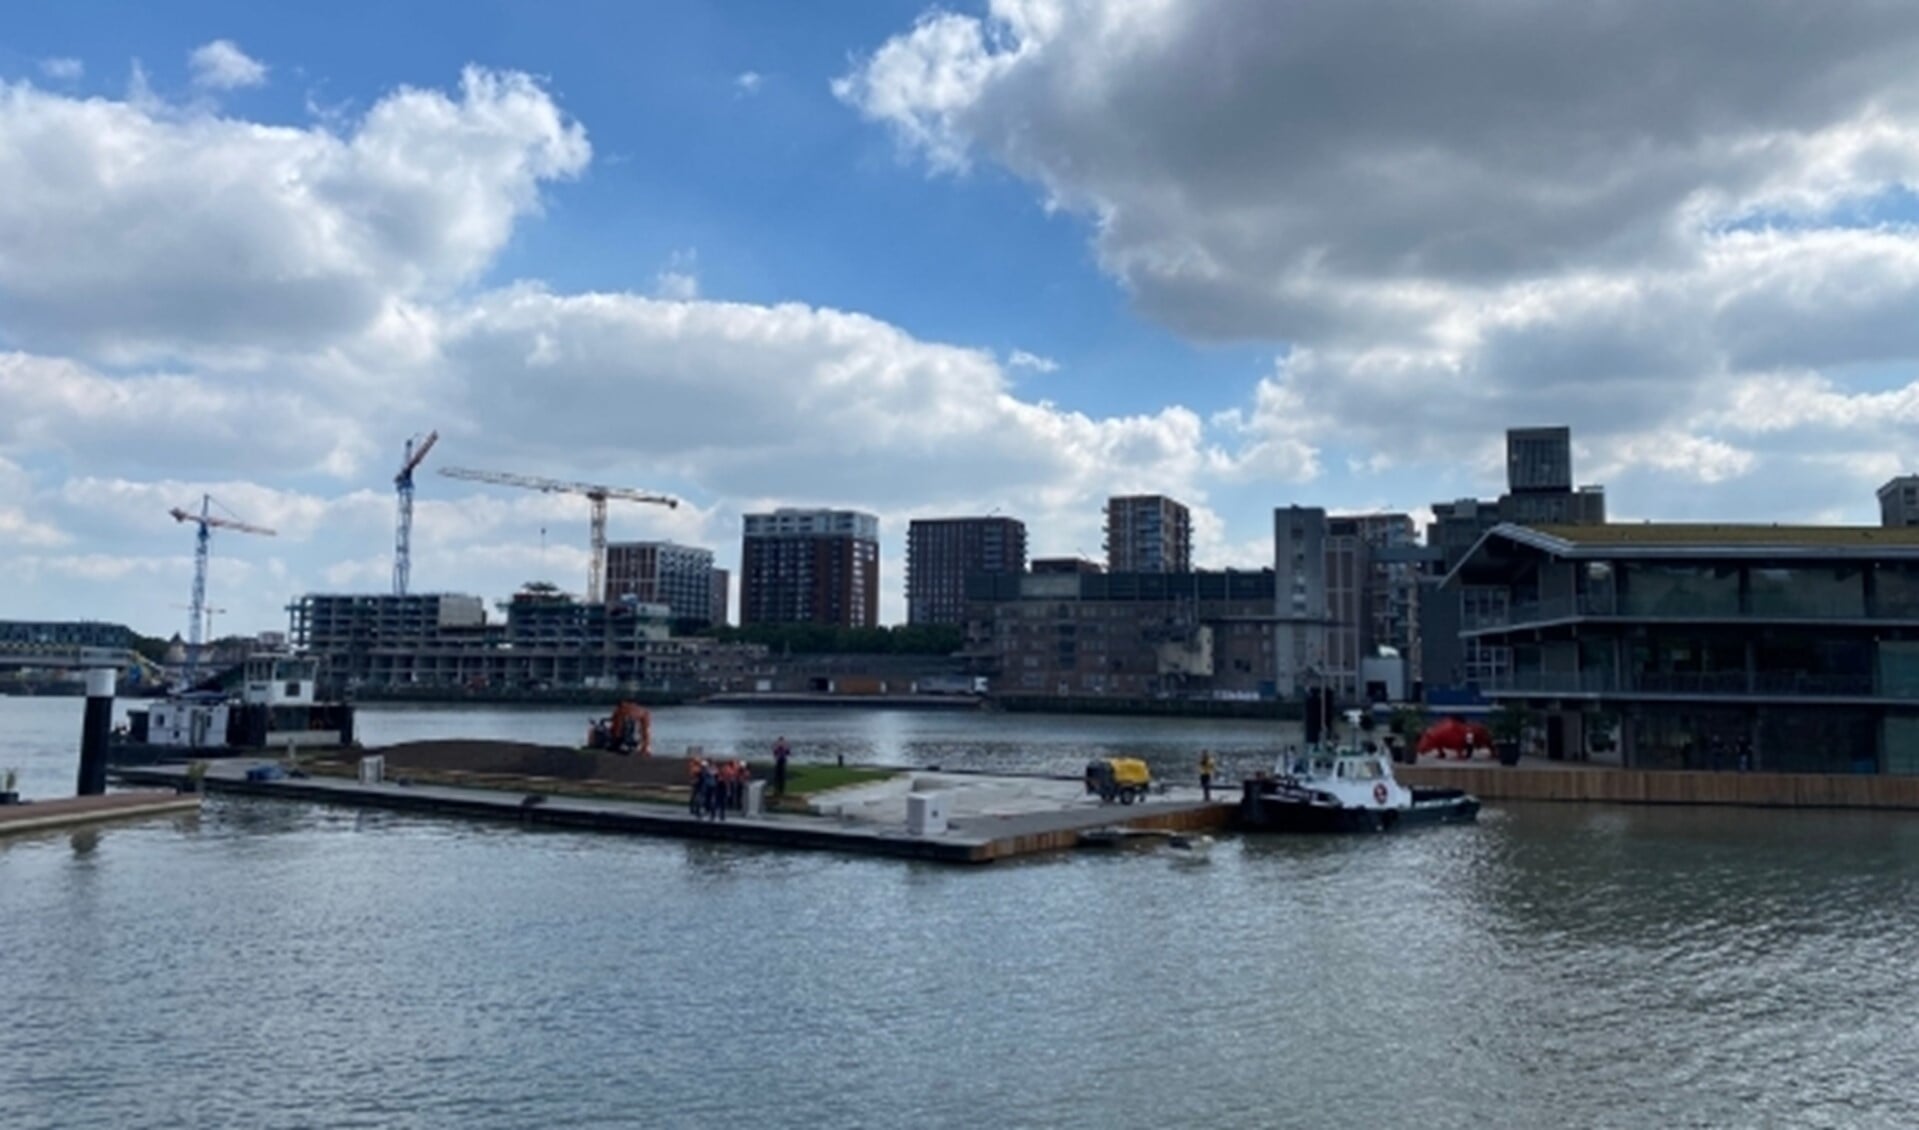 Plaatsing van het eerste ponton van het drijvend stadspark in de Rijnhaven